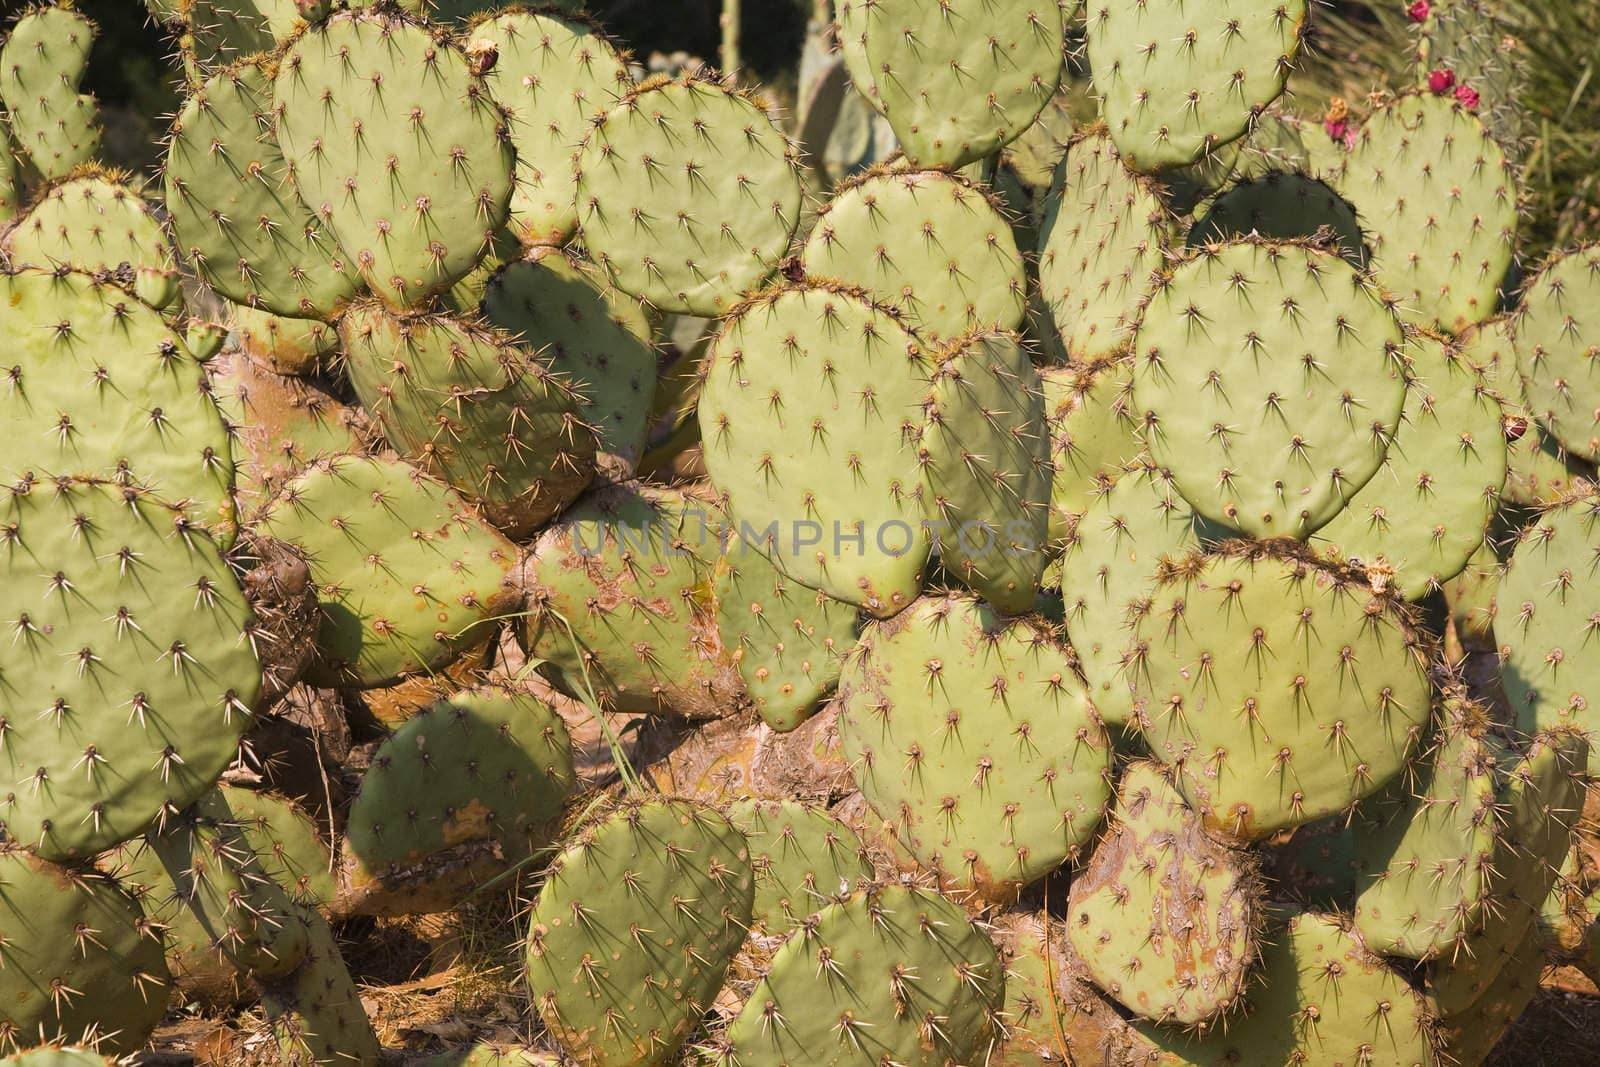 cactus background - perfect as botanic background